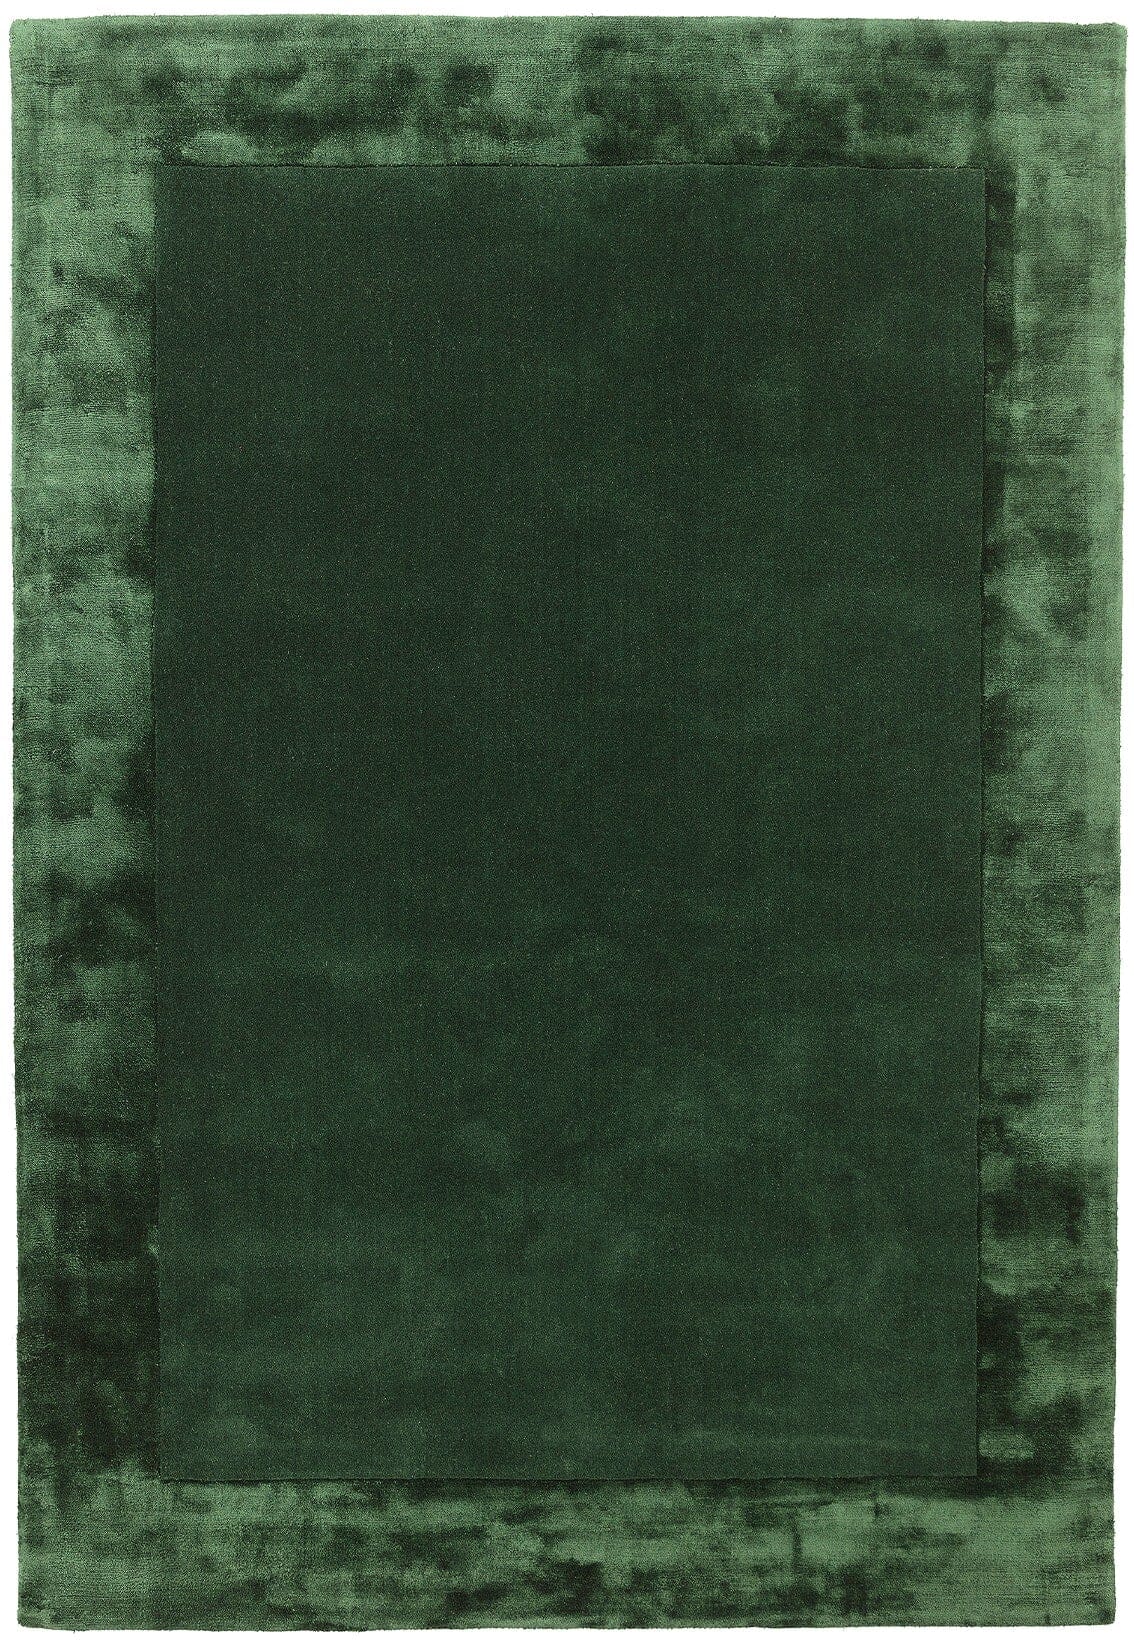 Ascot Green Hand Woven Wool and Viscose Border Rug